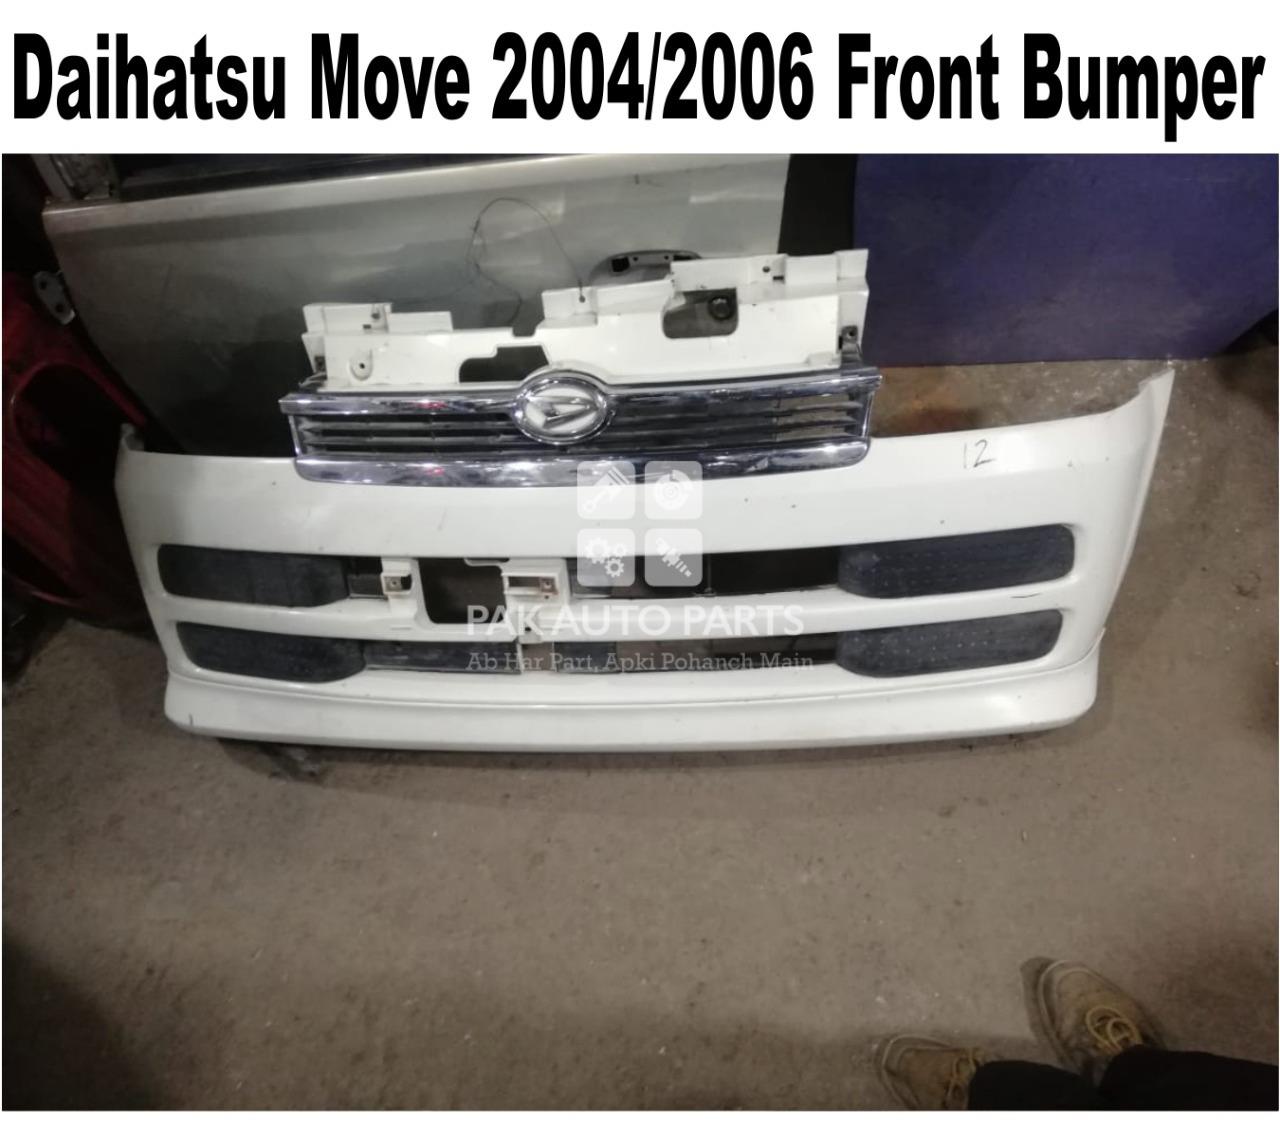 Picture of Daihatsu Move 2004-06 Front Bumper